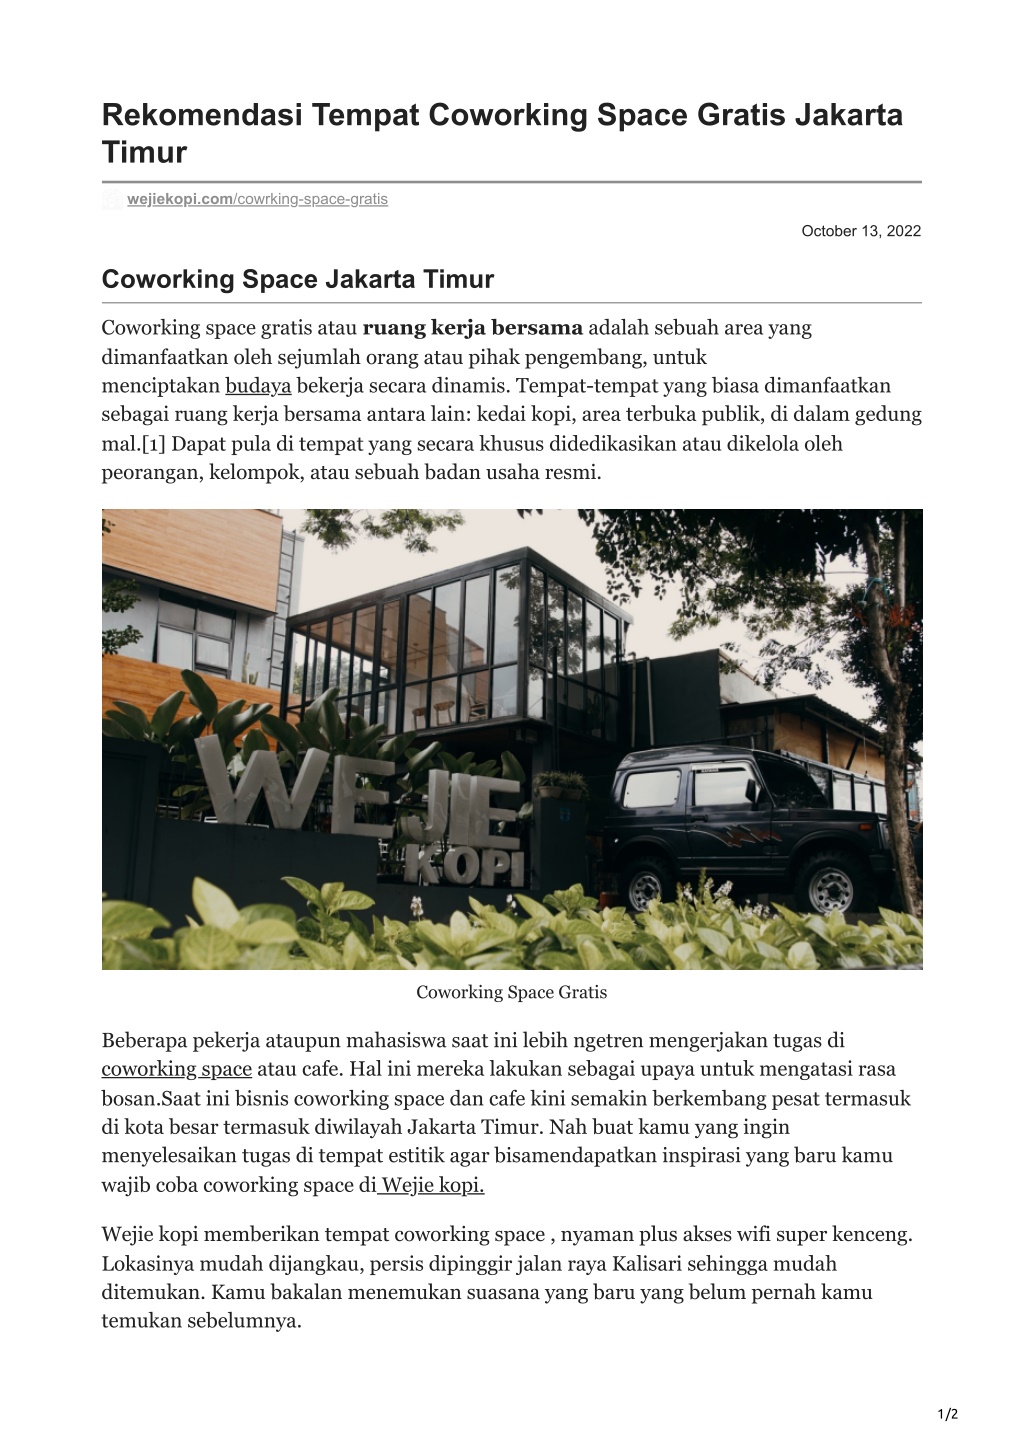 PPT - DocumentRekomendasi Tempat Coworking Space Gratis Jakarta Timur